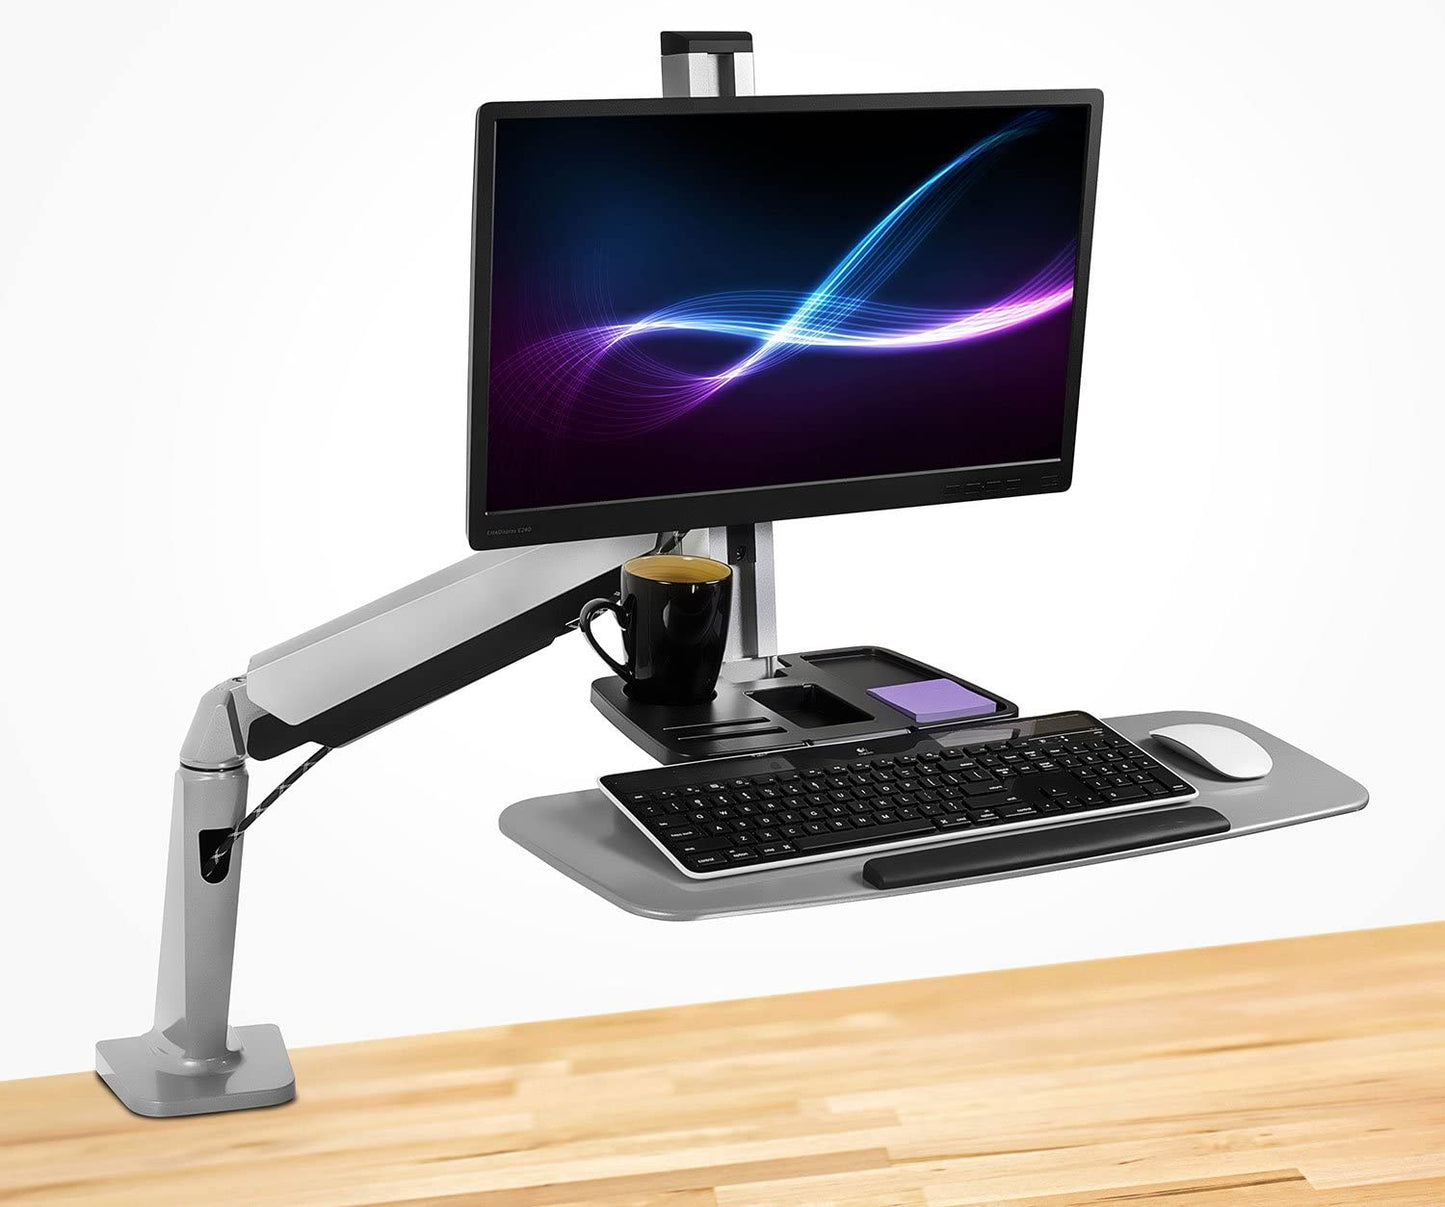 ¡Móntalo! Estación de trabajo Sit Stand para monitor único  Soporte de escritorio de altura ajustable con soporte para monitor y bandeja para teclado